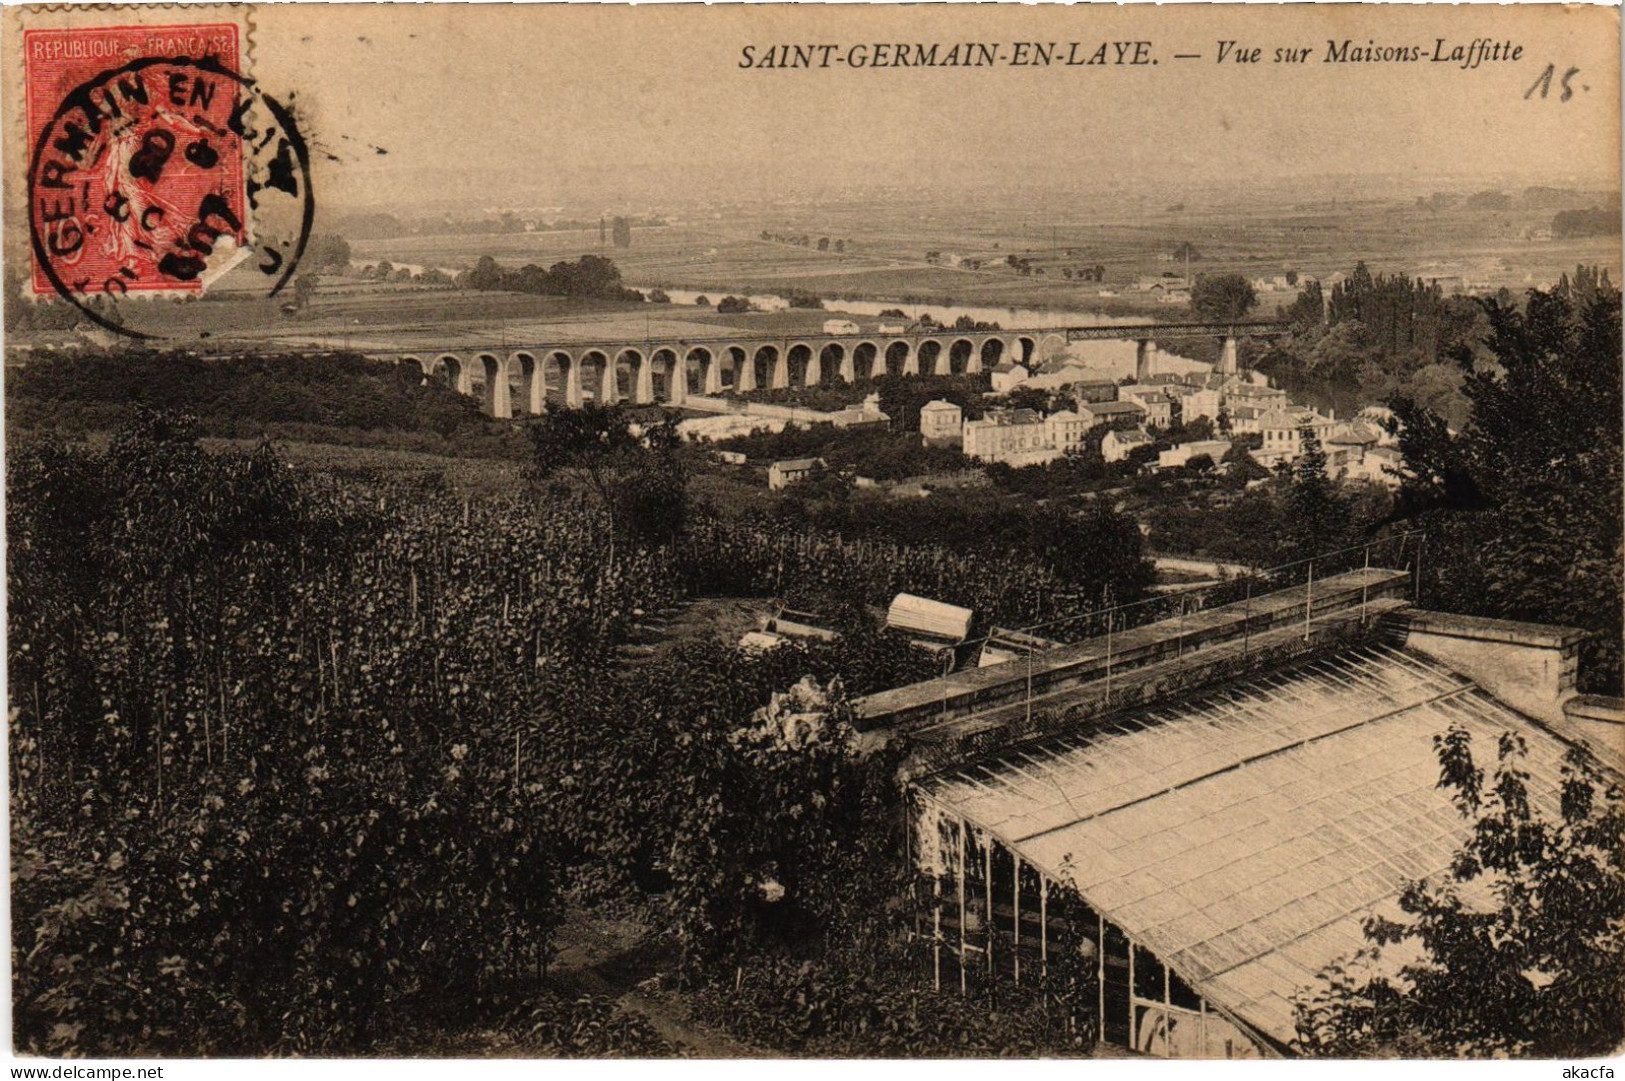 CPA St-Germain-en-Laye Maisons-Laffitte (1390940) - St. Germain En Laye